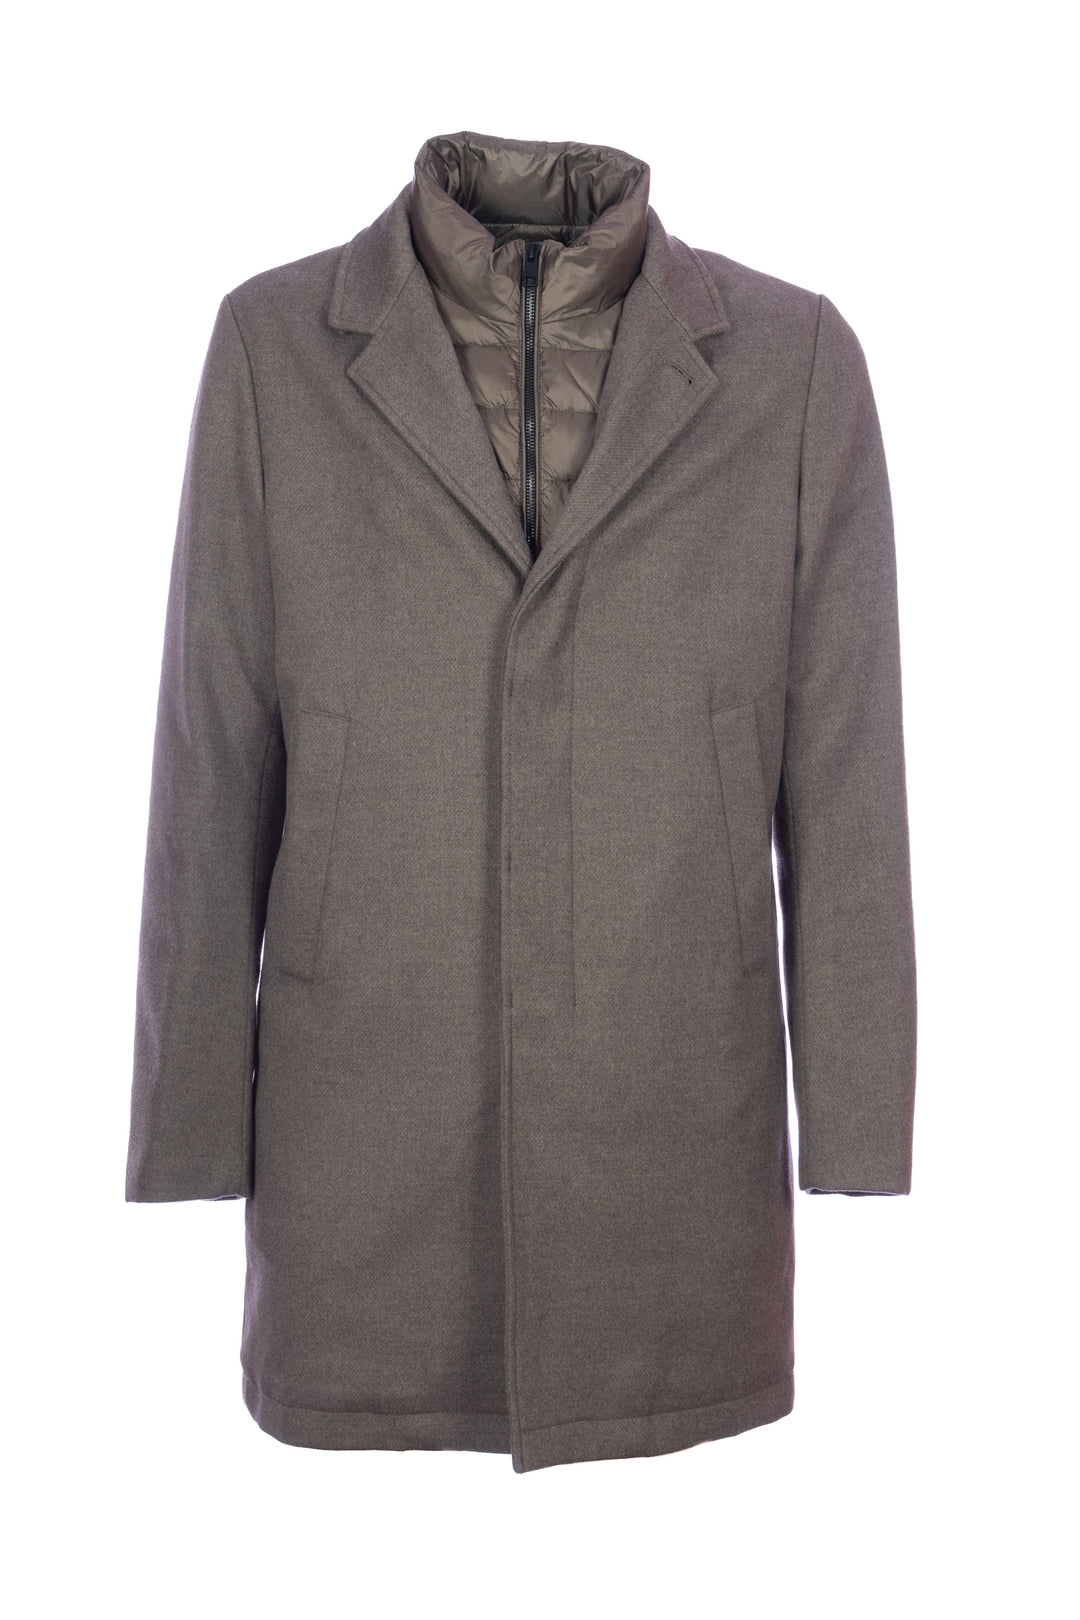 DUNO Cappotto imbottito grigio in lana tecnica con pettorina rimovibile - Mancinelli 1954